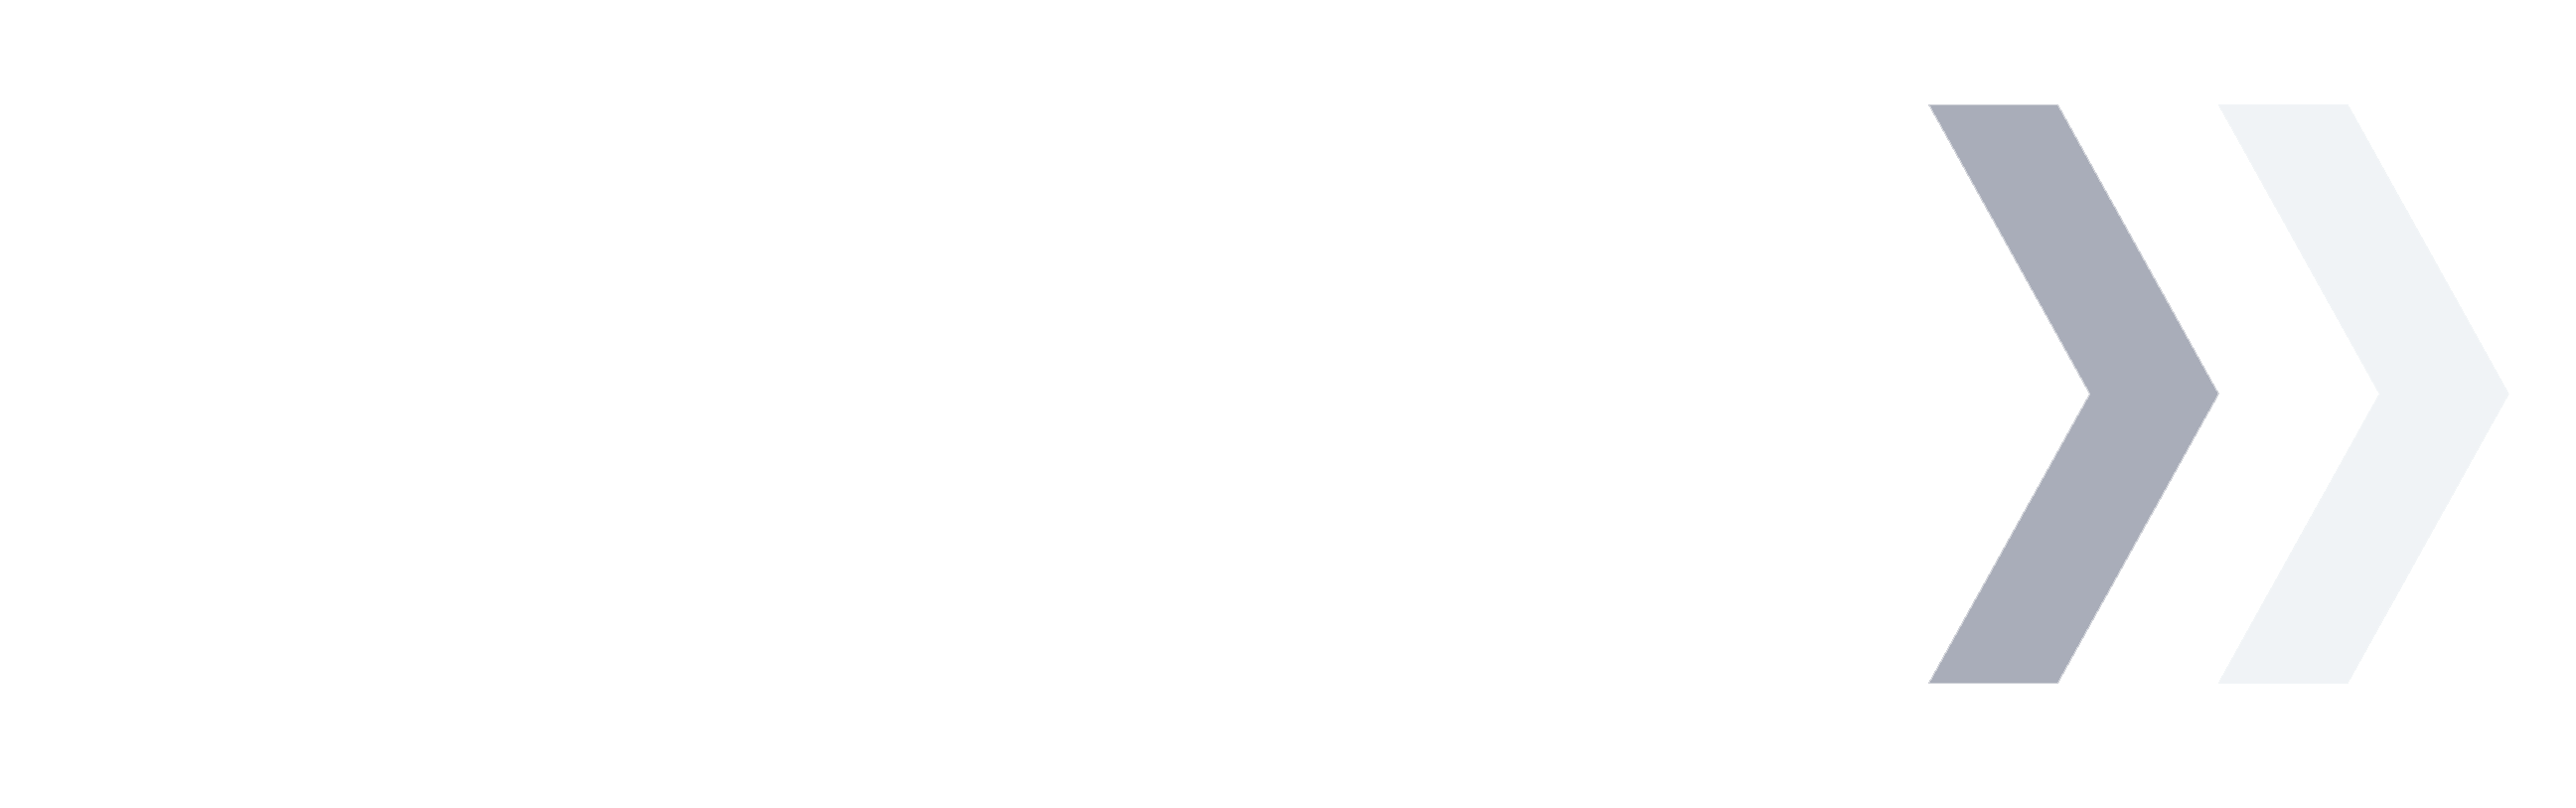 Press Forward Minnesota